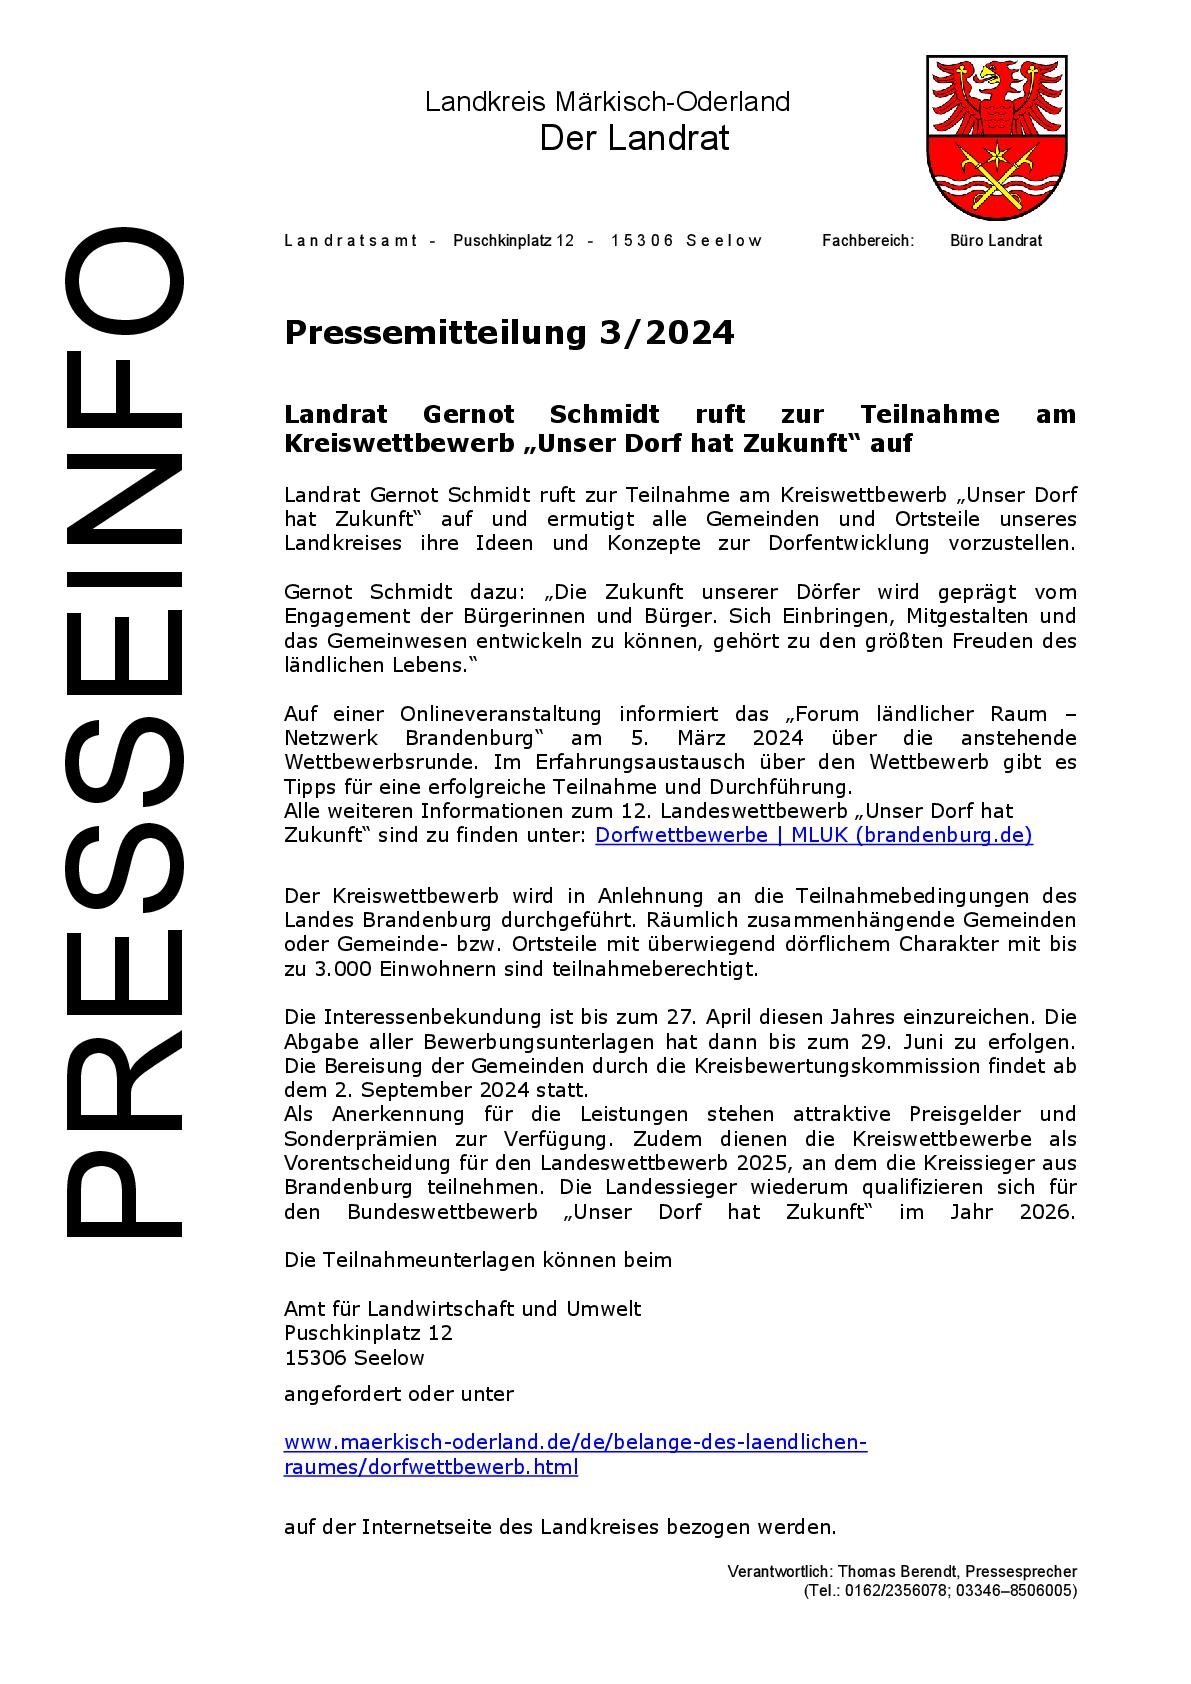 Pressemitteilung des Landkreises zur Teilnahme am Kreiswettbewerb "Unser Dorf hat Zukunft"